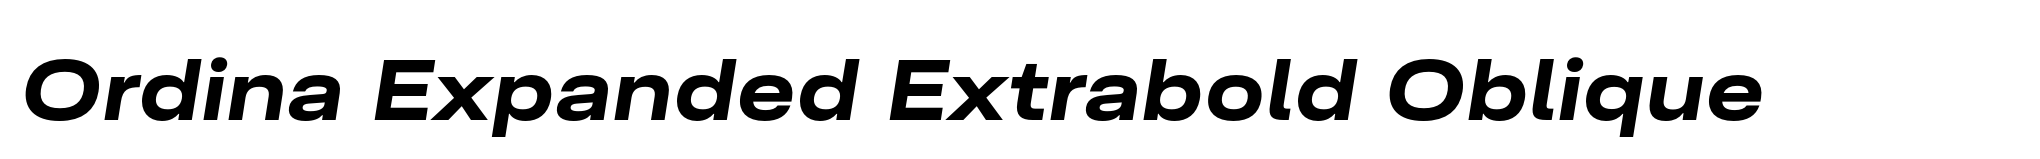 Ordina Expanded Extrabold Oblique image